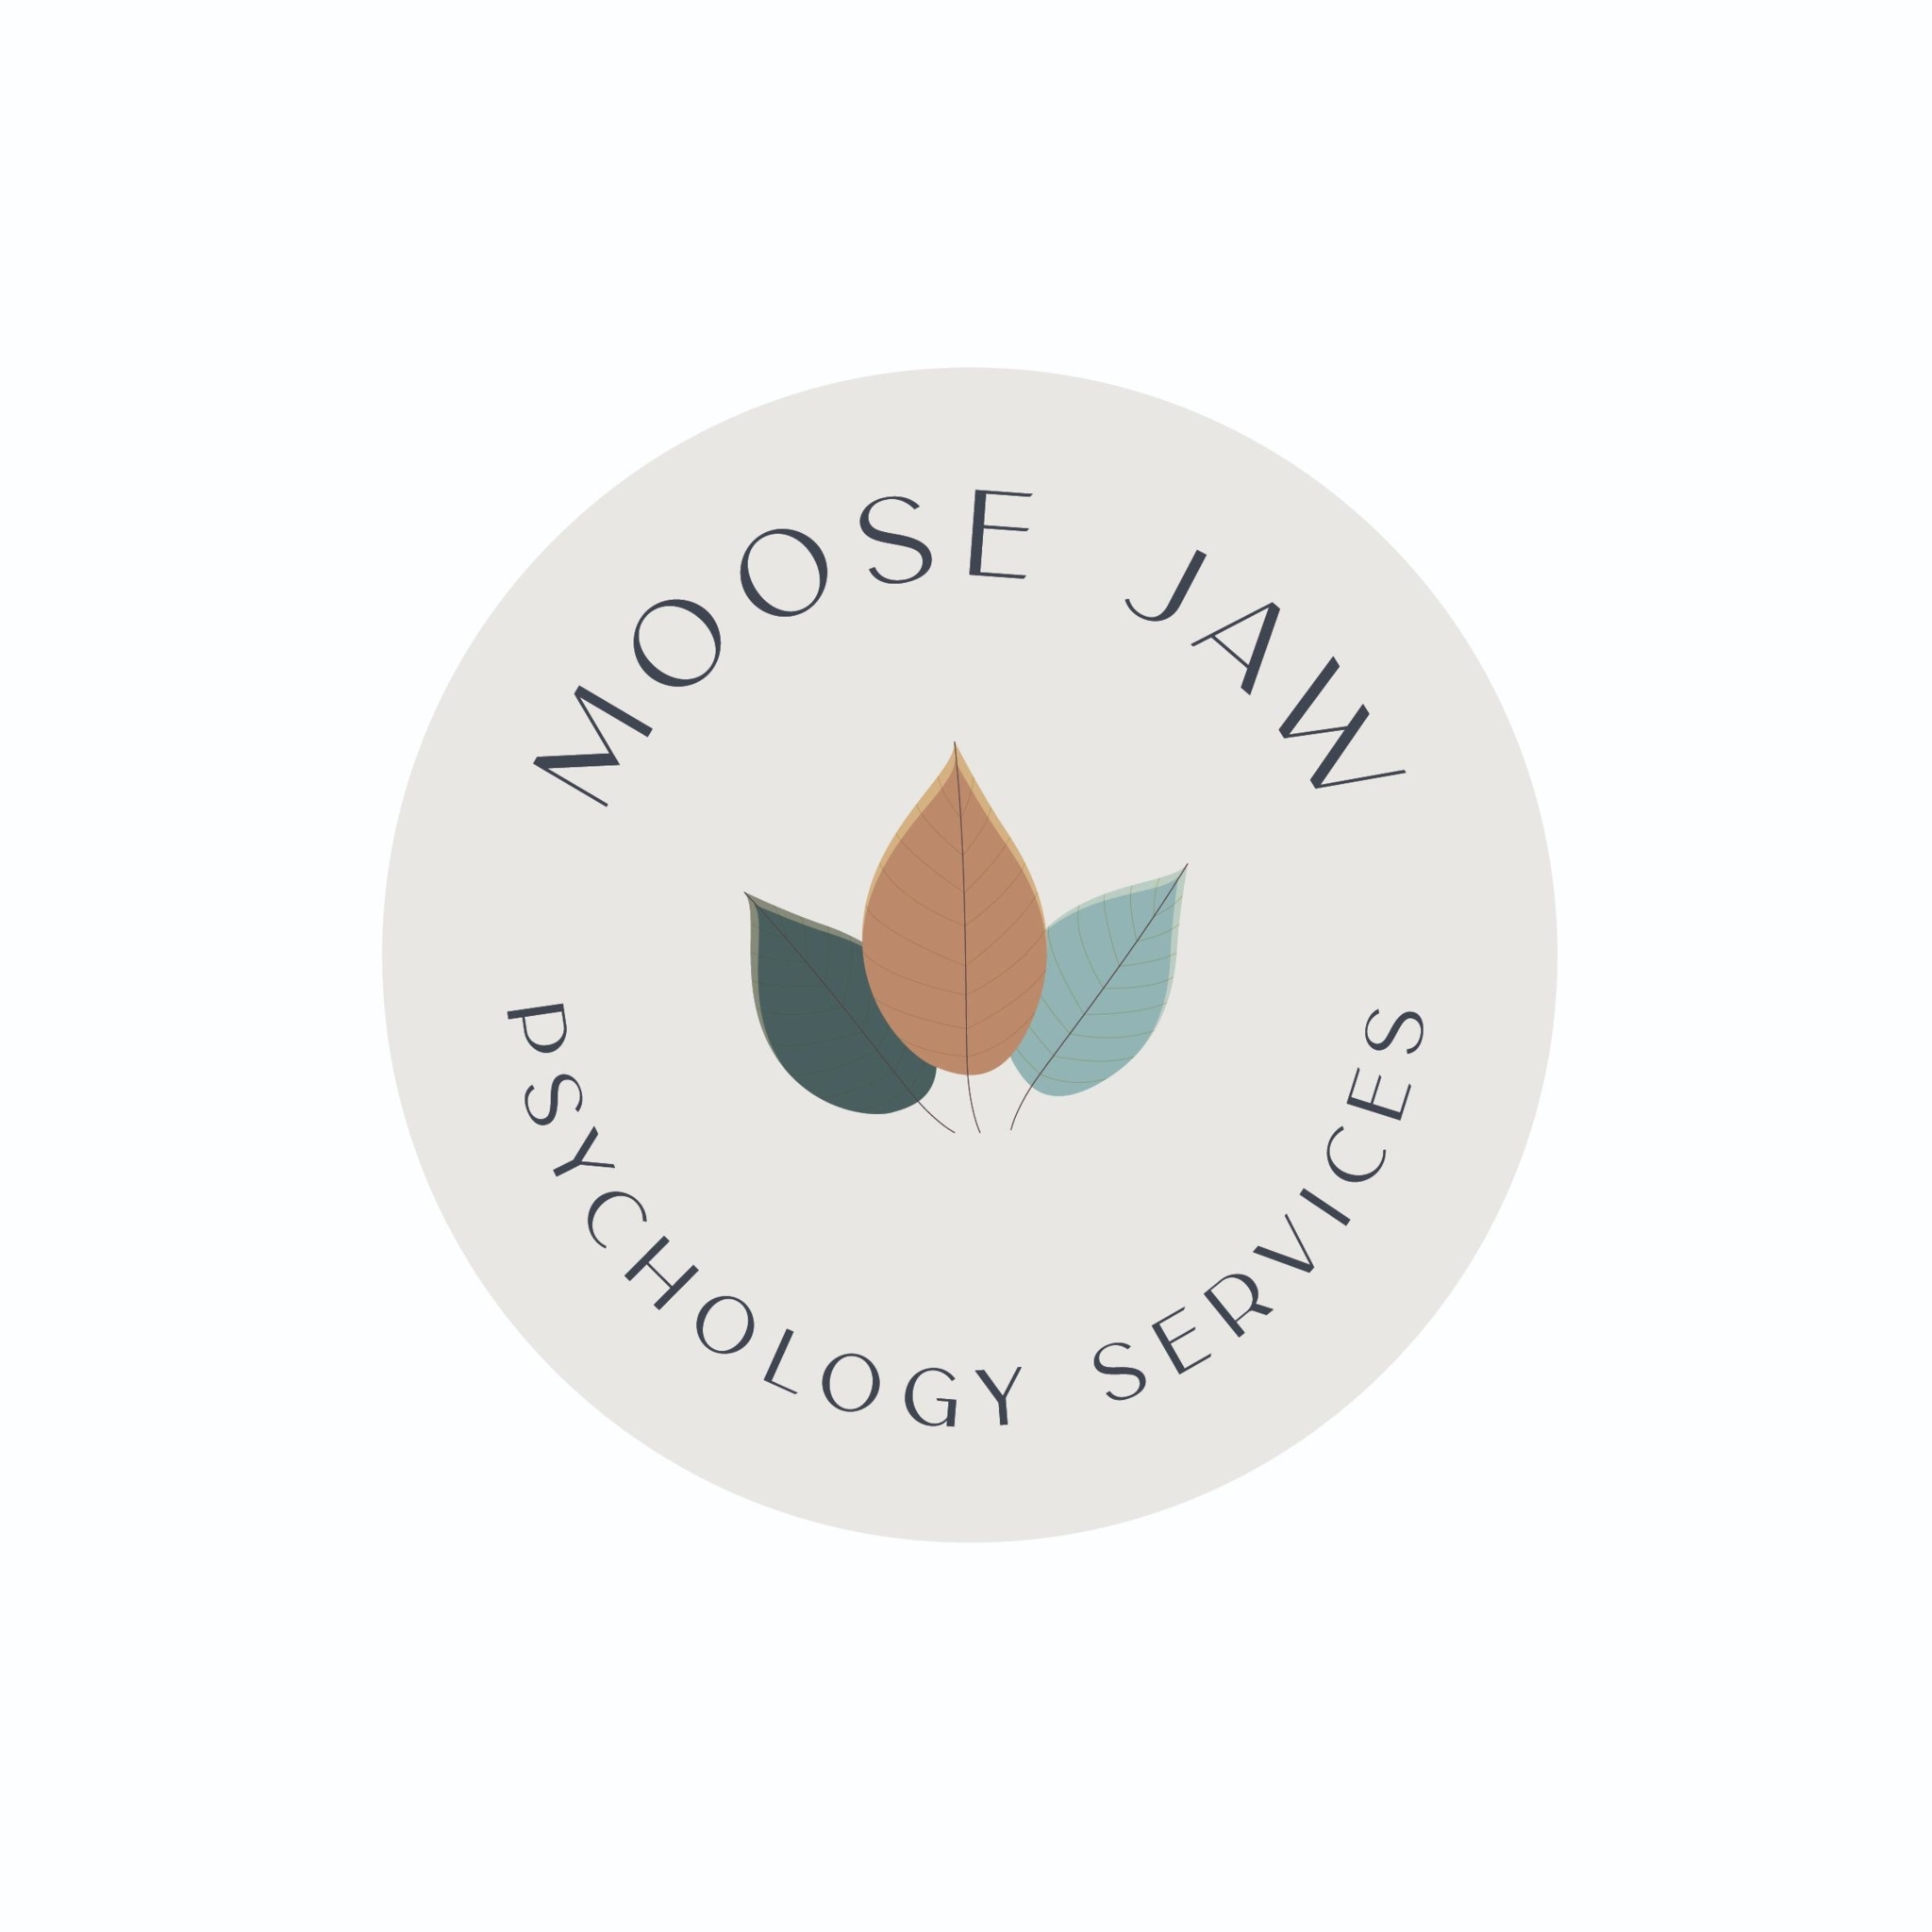 Moose Jaw Psychology Services - Services et centres de santé mentale